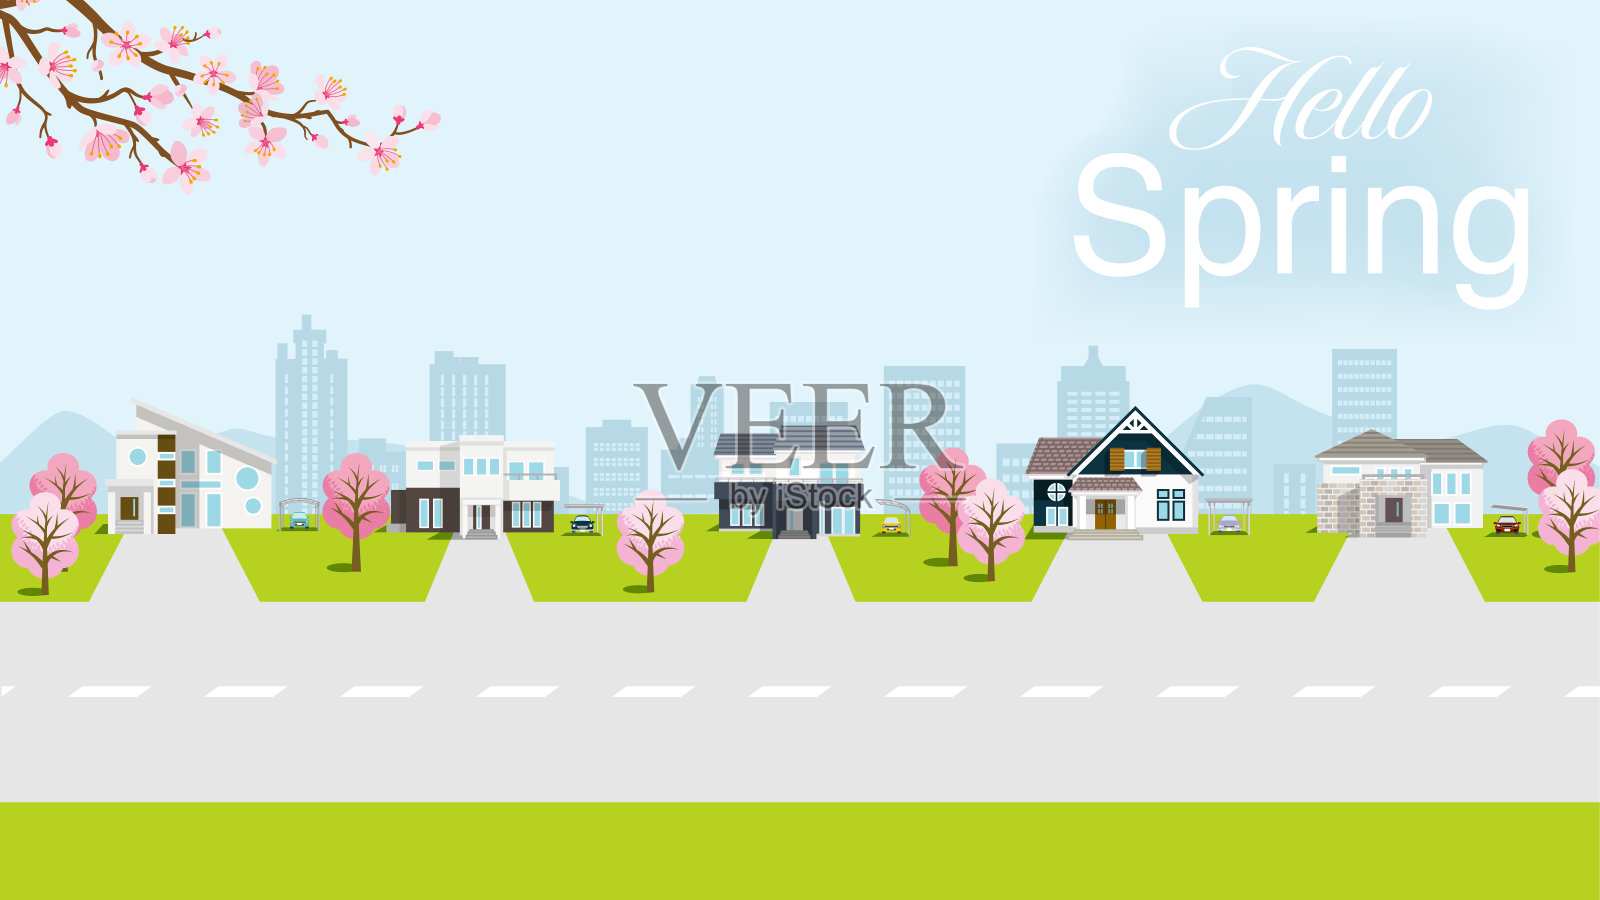 春天的居住区-包含“你好春天”的字样插画图片素材